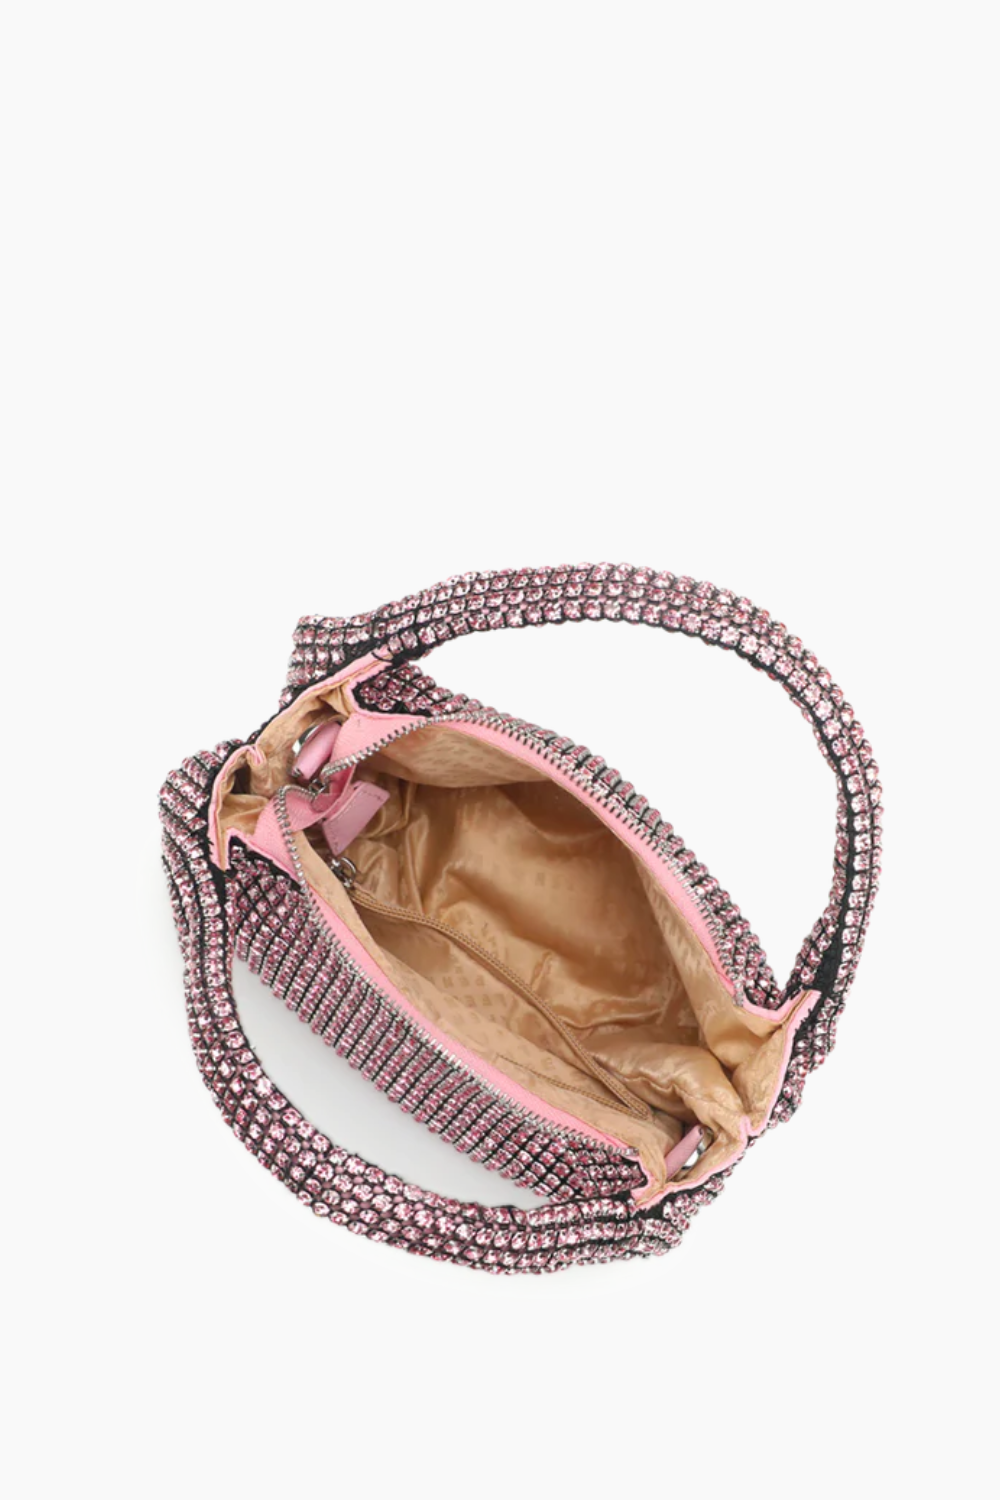 Mona Handbag - Light Rose - Silfen Studio